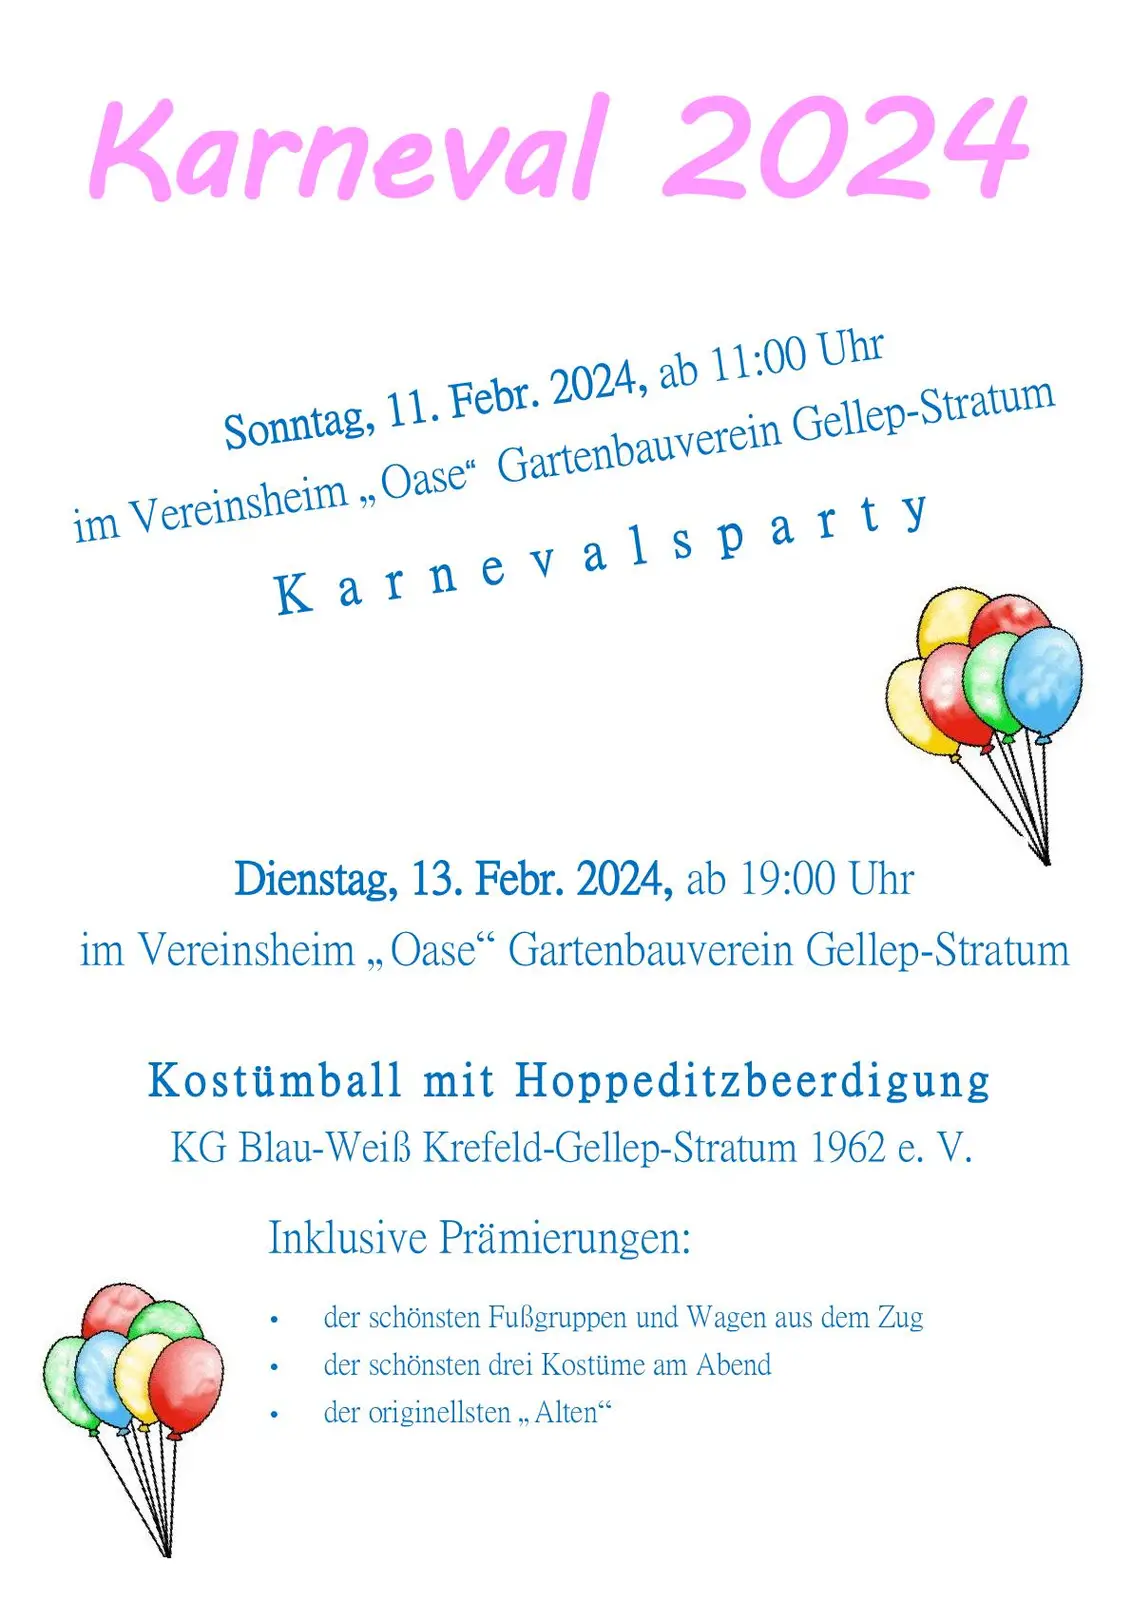 Plakat für 2 Karnevalstermine in Gellep-Stratum - Ort, Zeit und Anlass inkl.